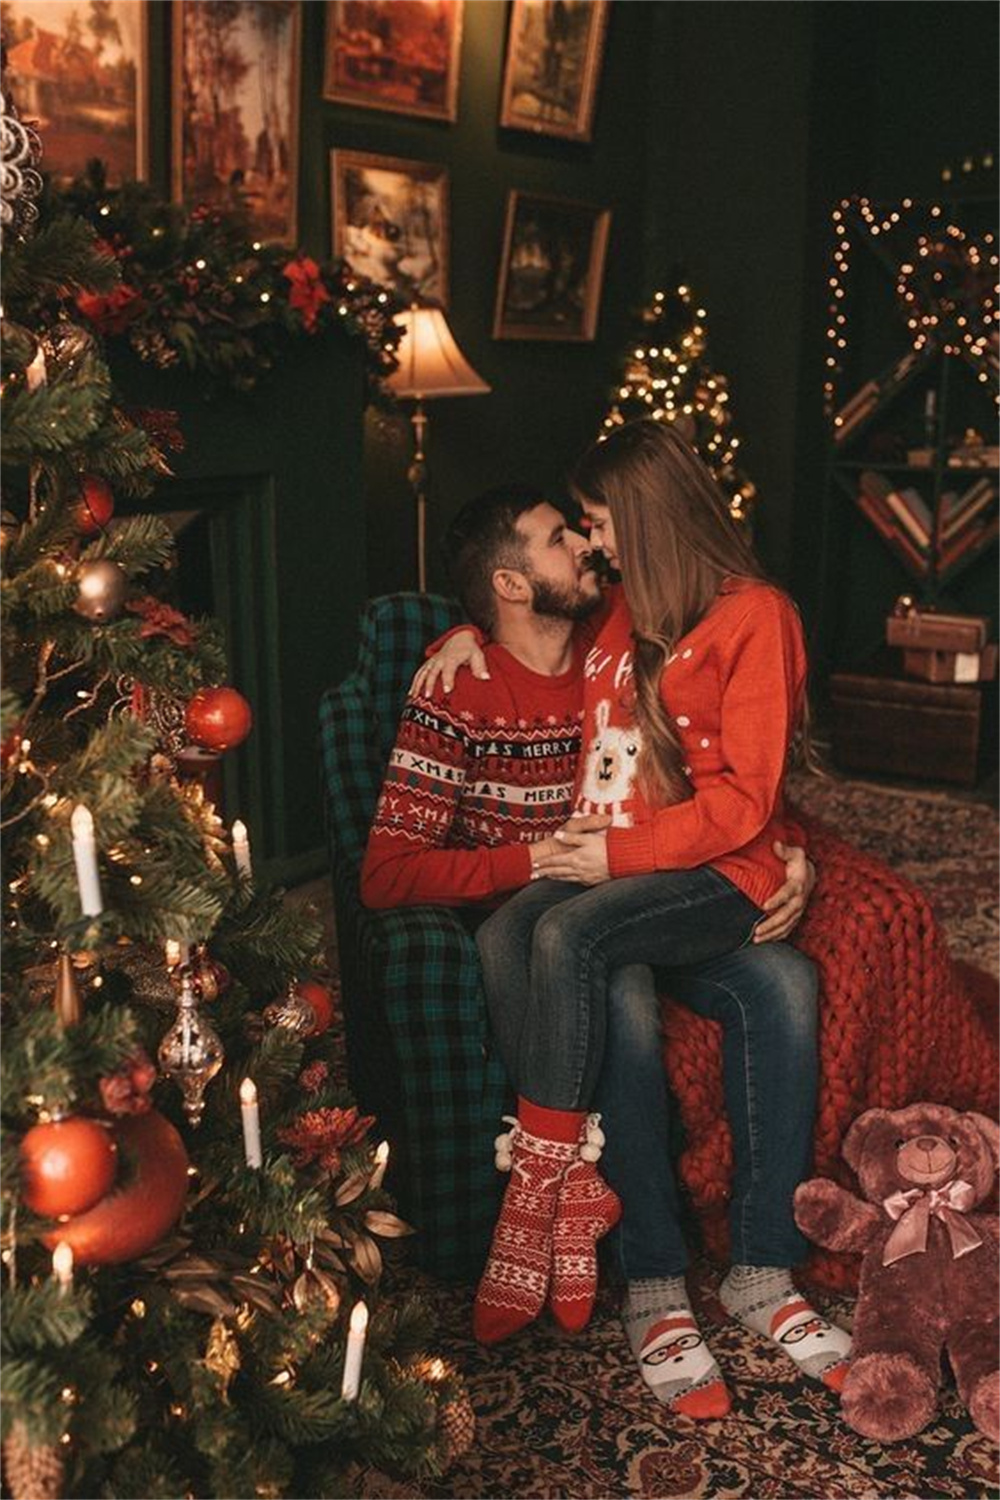 Twinkling Christmas Lights Magic for Couple Photos